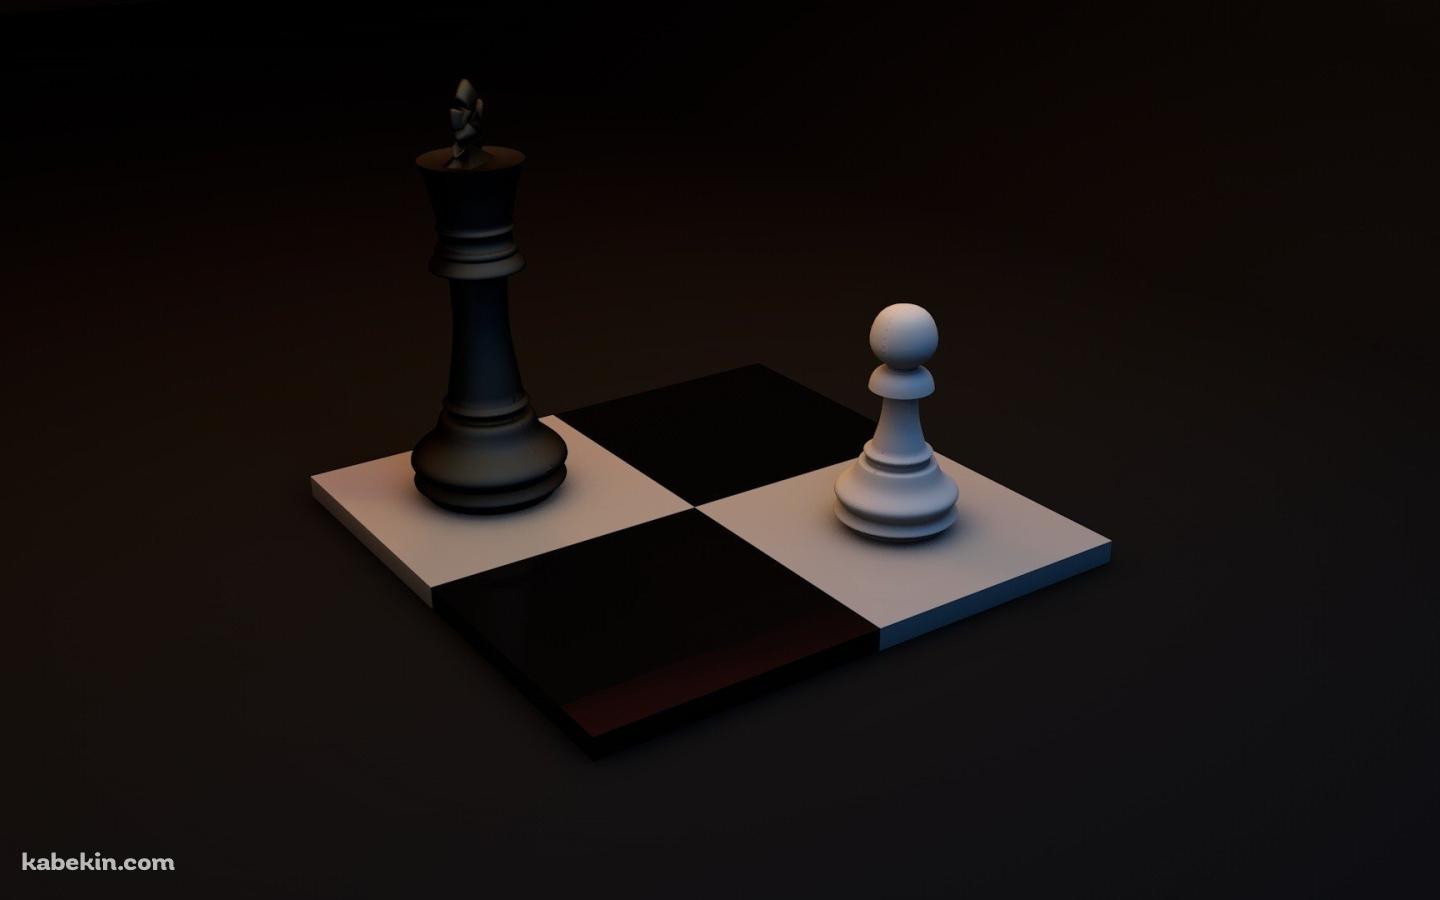 チェス 黒と白の駒の壁紙(1440px x 900px) 高画質 PC・デスクトップ用